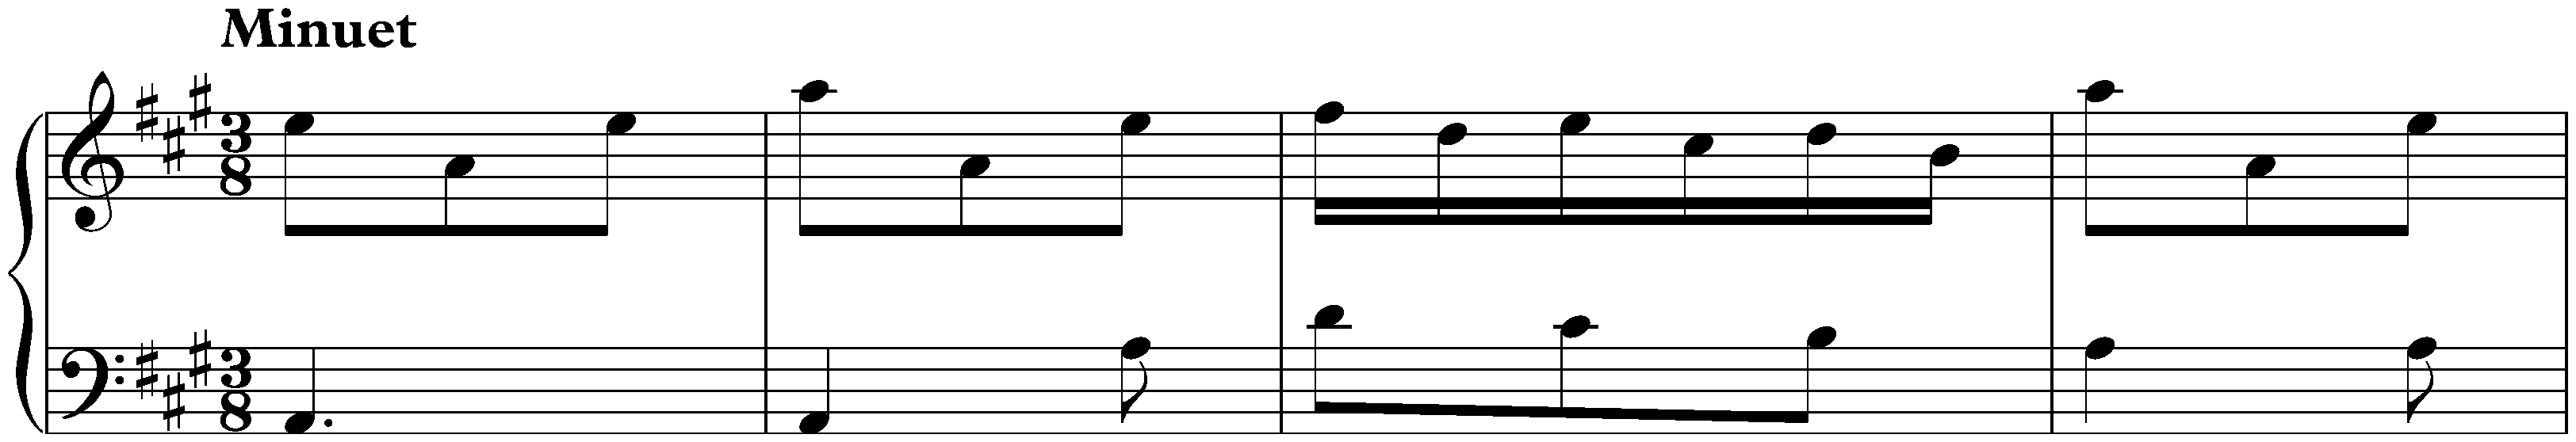 Sonata in A major, K. 83; 2. Minuet